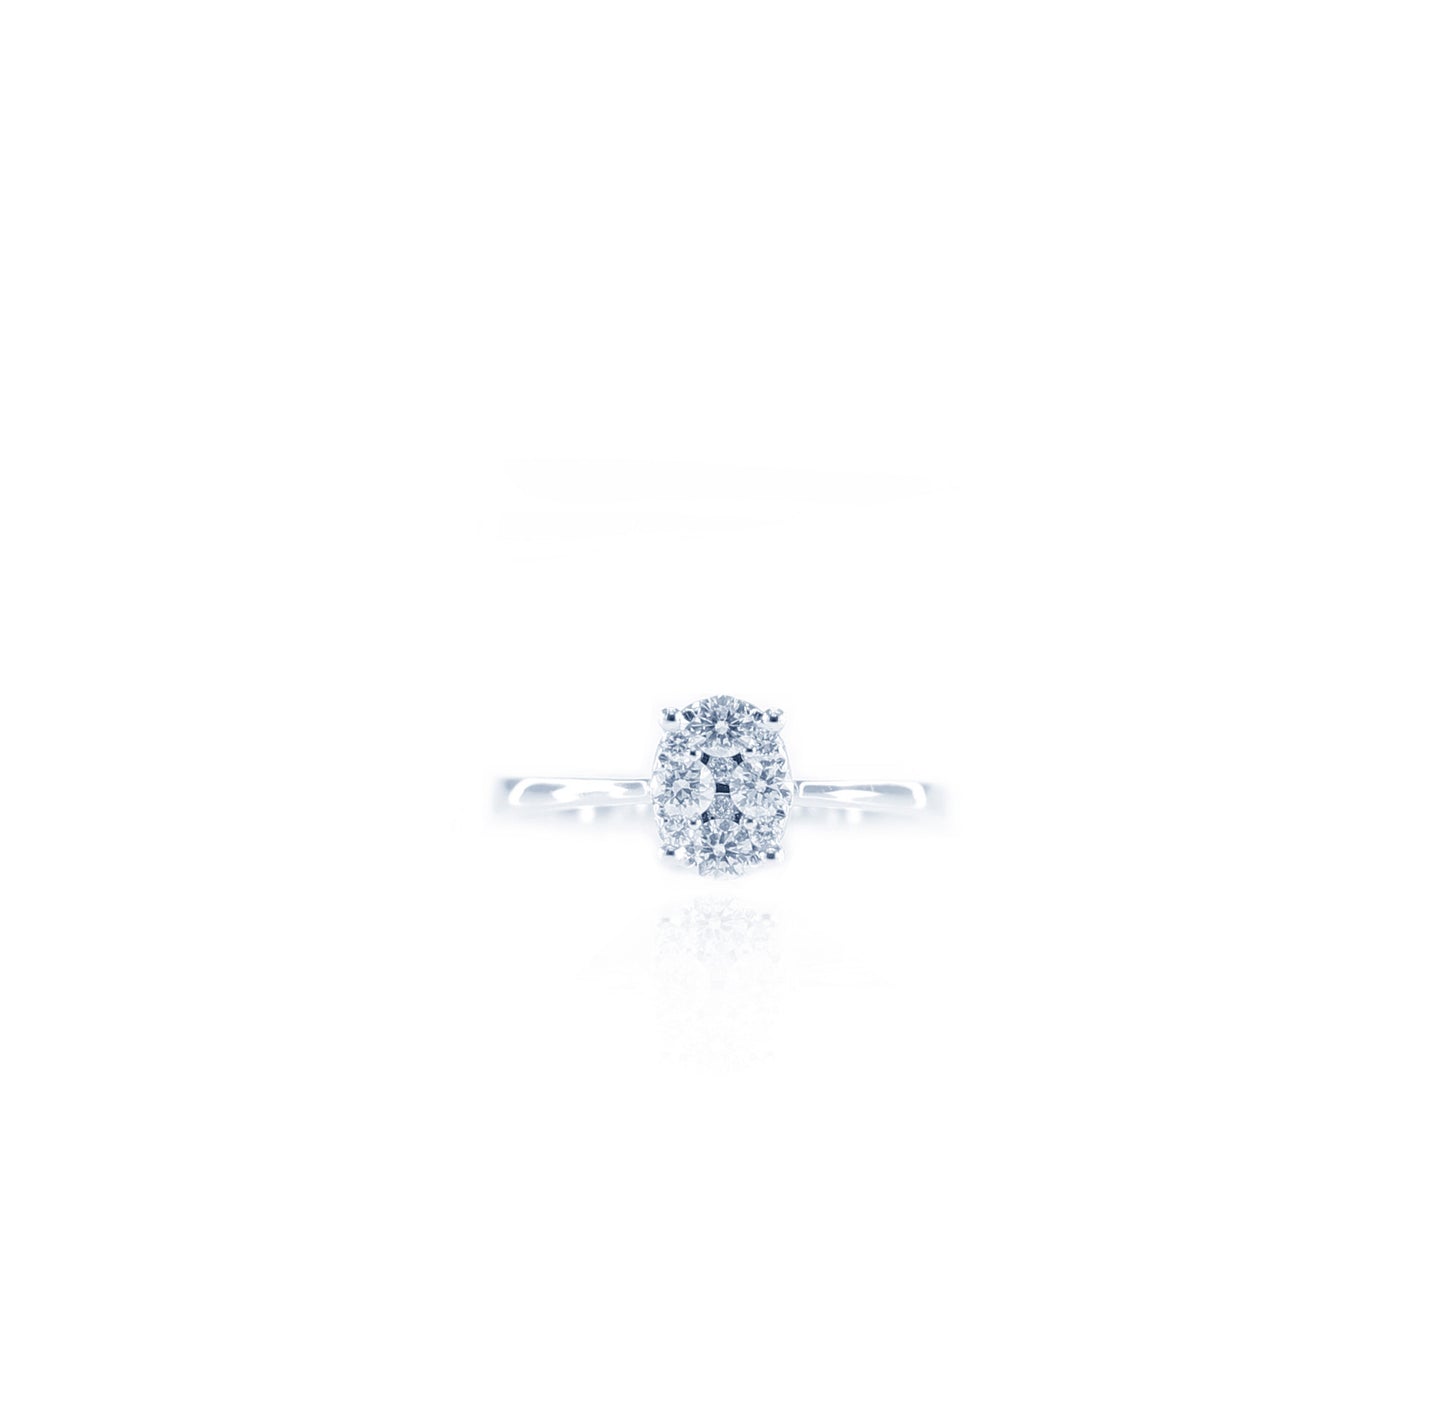 Glam Oval Frame Diamond Ring in 18K White Gold